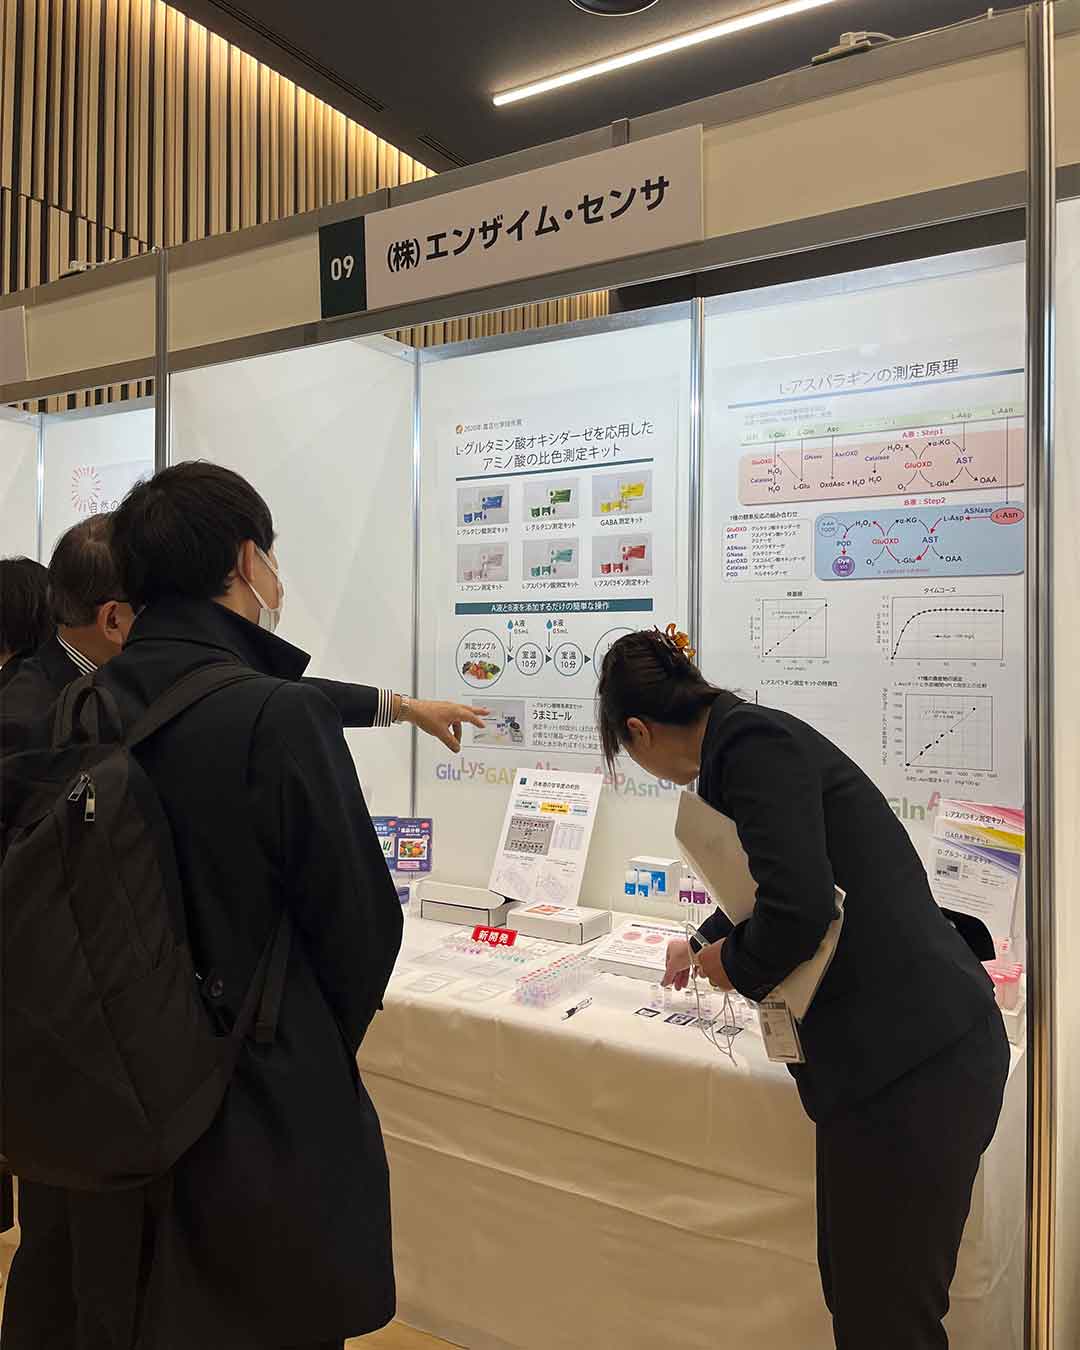 日本農芸化学会100周年記念大会の特別企画「農芸化学を体感する」に出展参加しました。